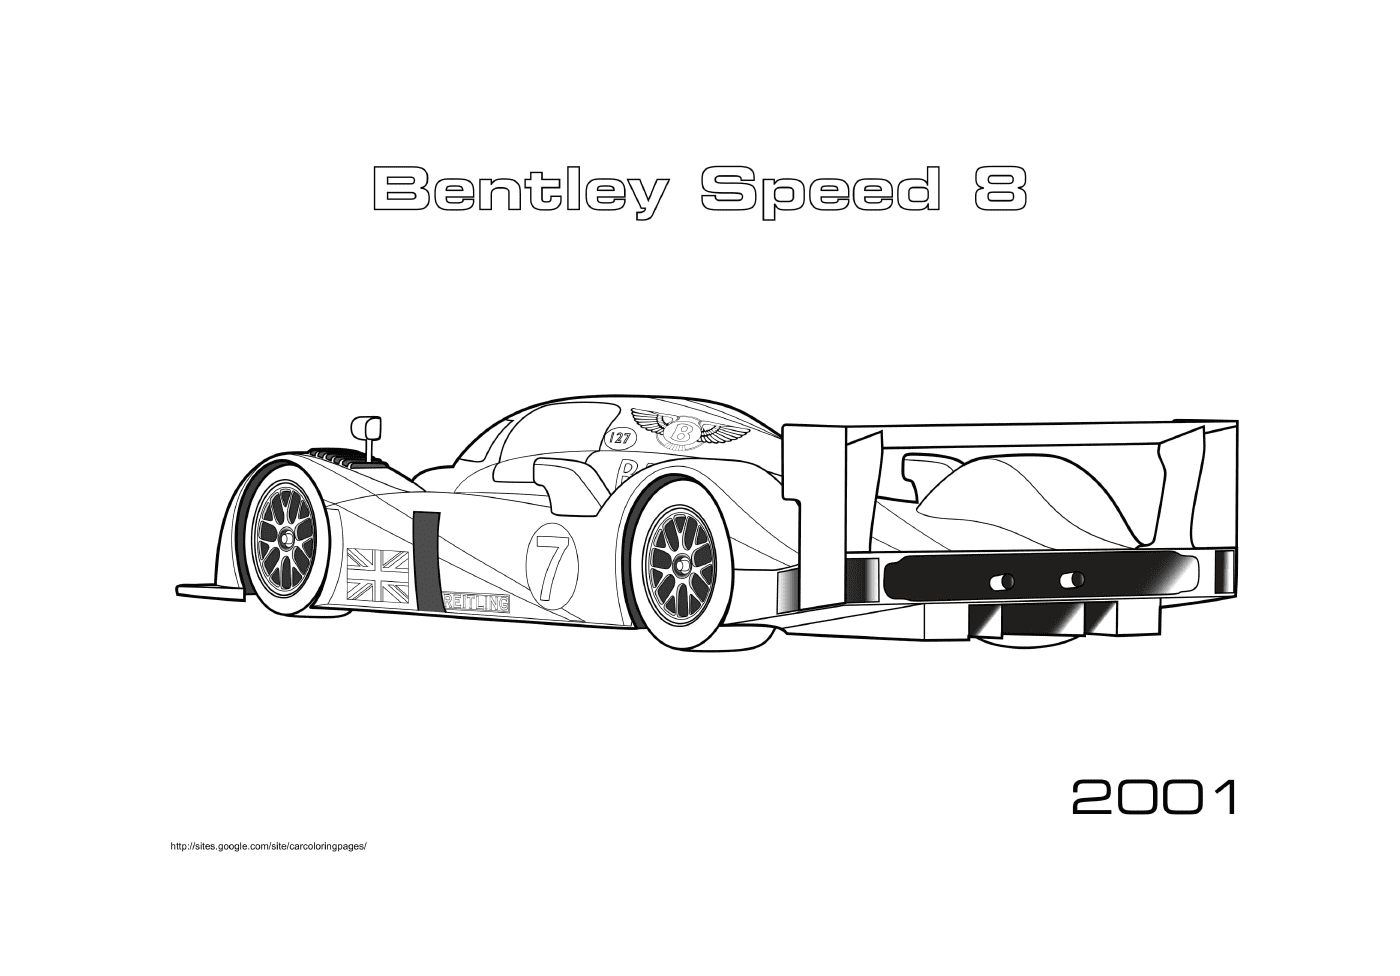  Bentley Speed 8 of 2001 